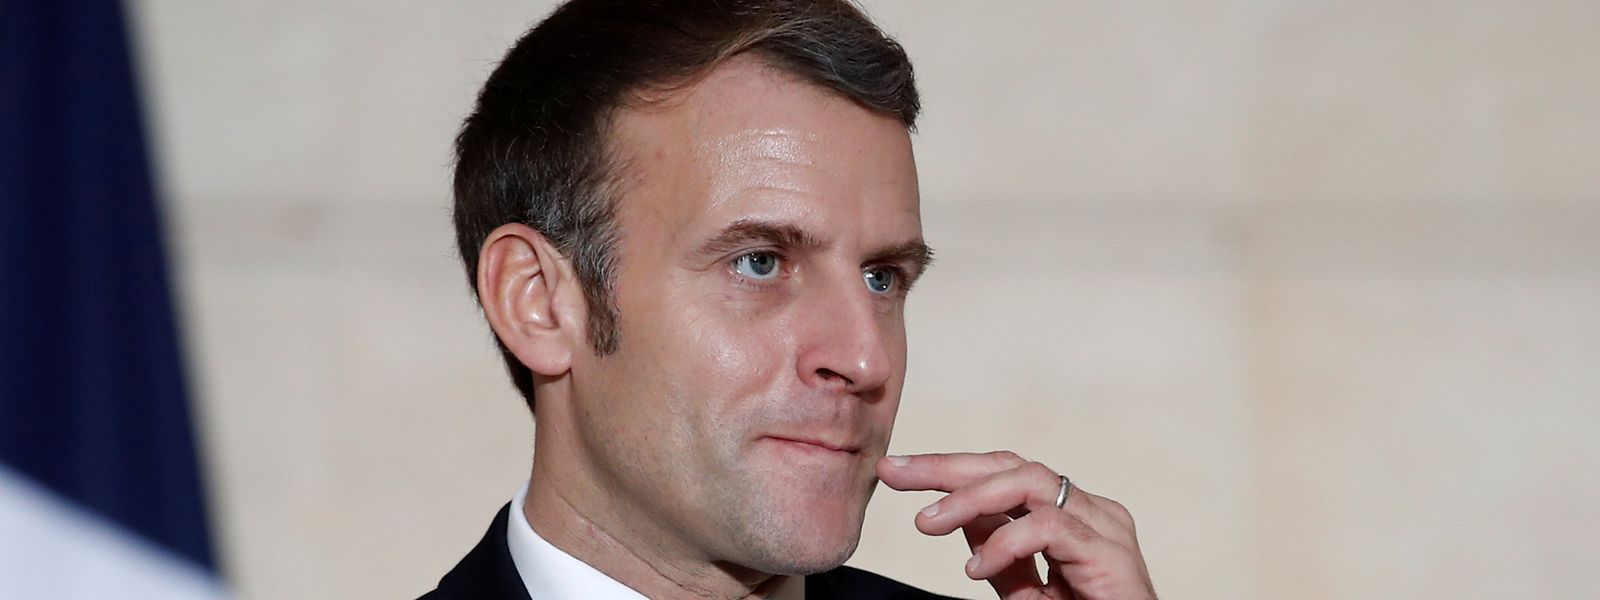 Das Eis wird dünn für Frankreichs Präsident Emmanuel Macron. Immer mehr Abgeordnete seiner Partei (LREM) verlassen die Fraktion.